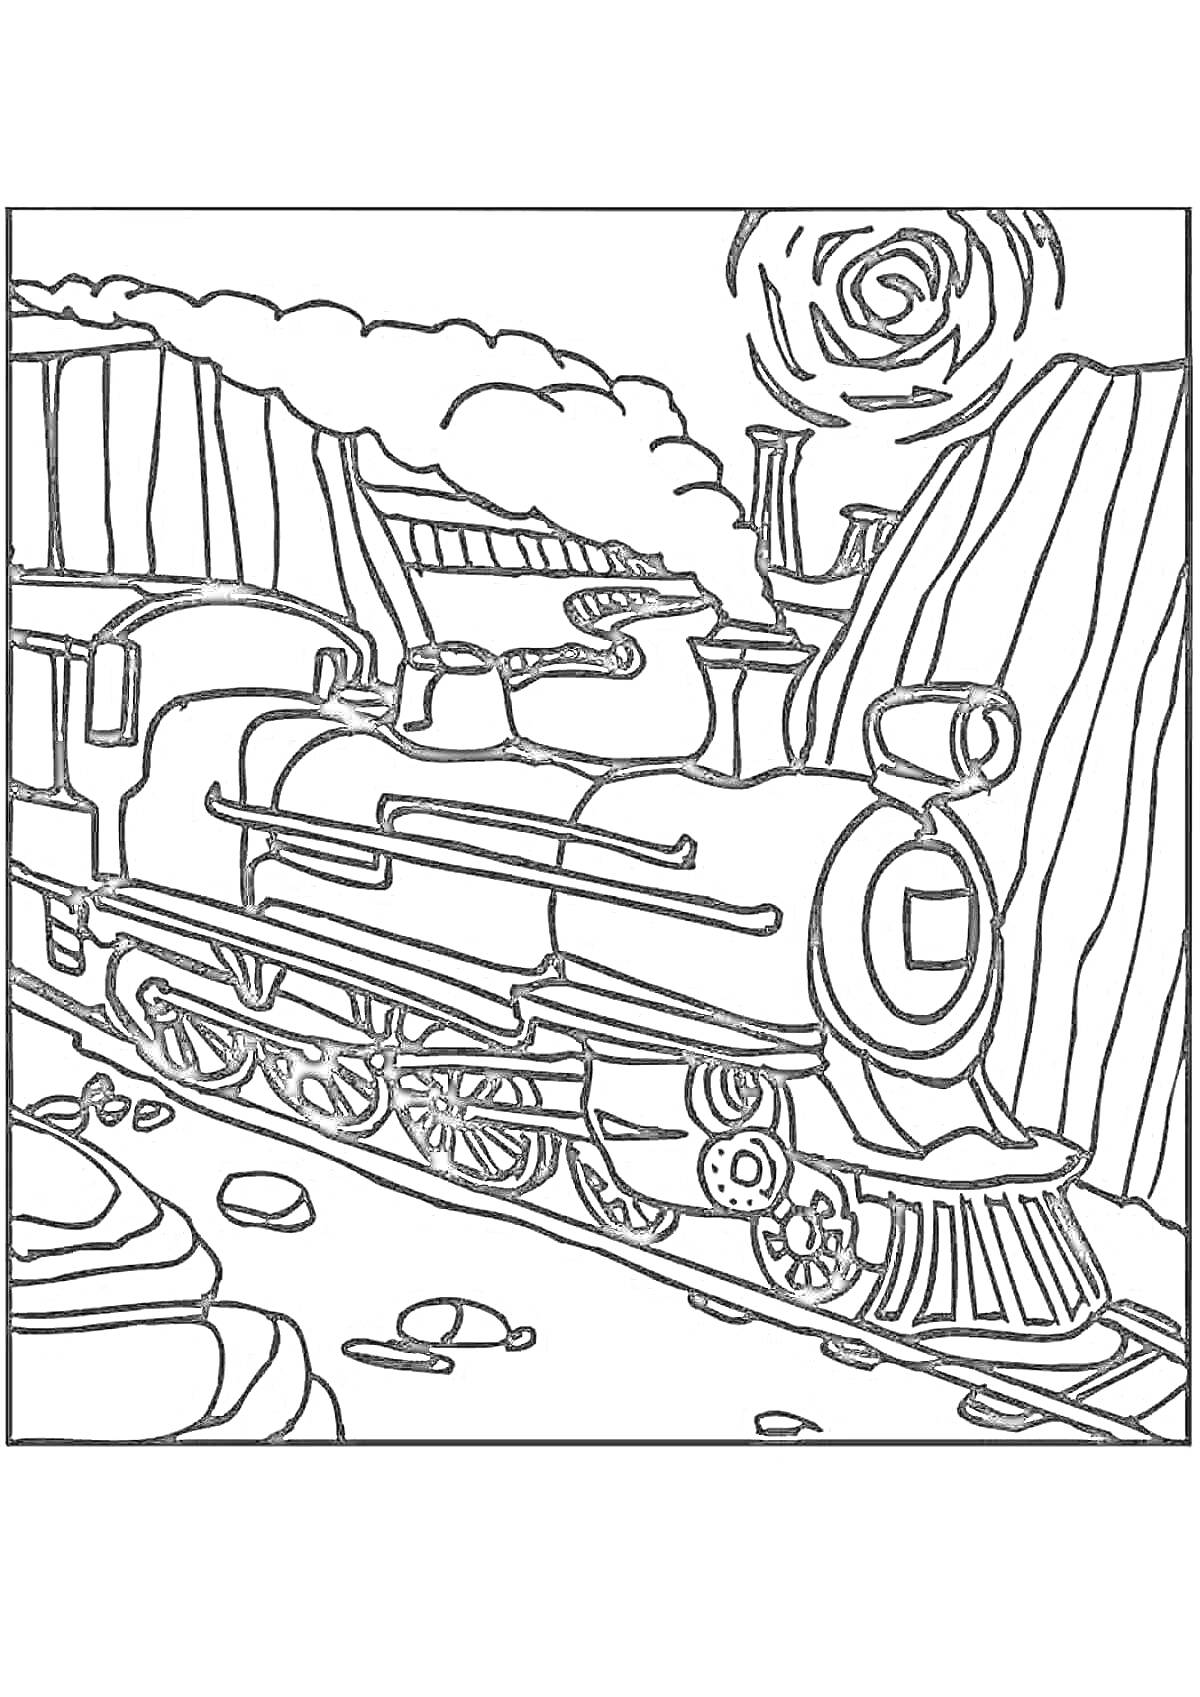 Раскраска Паровоз в горах на железной дороге с дымом из трубы и окружением скал